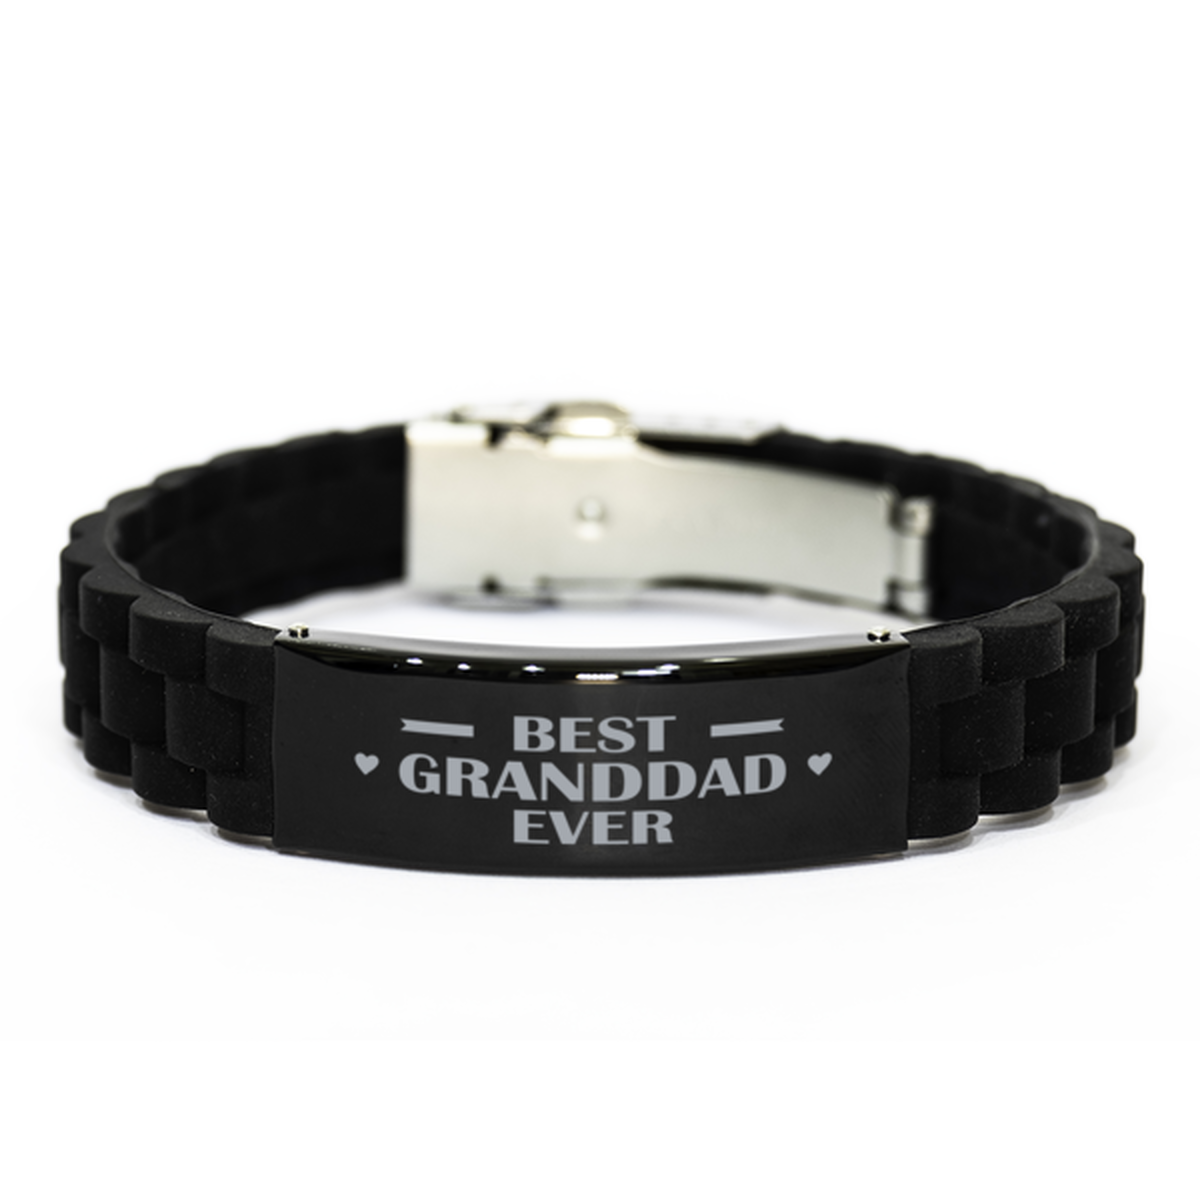 Best Granddad Ever Granddad Gifts, Funny Black Engraved Bracelet For Granddad, Family Gifts For Men